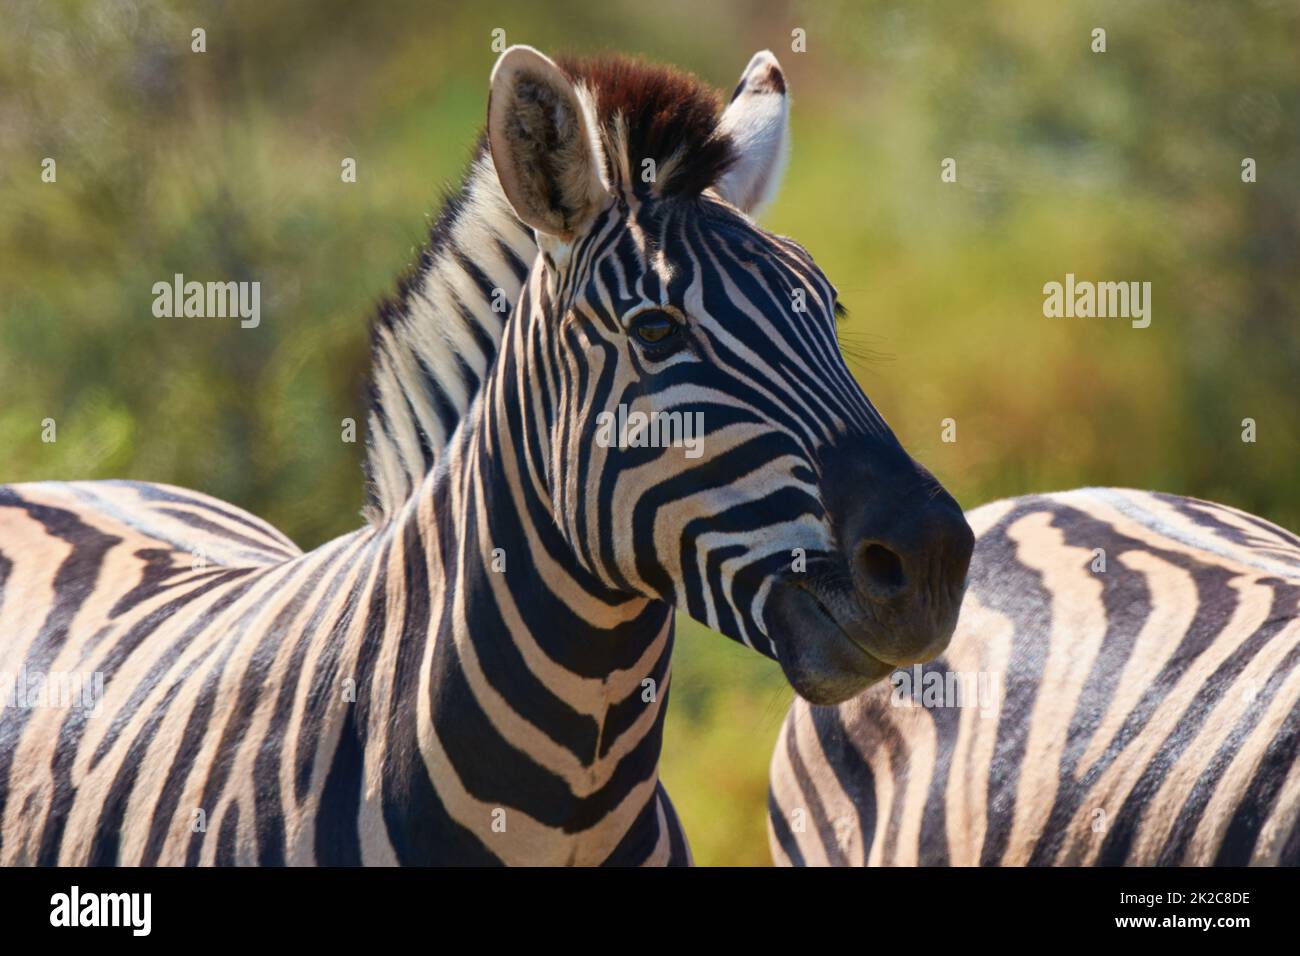 Bellezza bianca e nera del selvaggio. Shot di due zebre pascolo in natura. Foto Stock